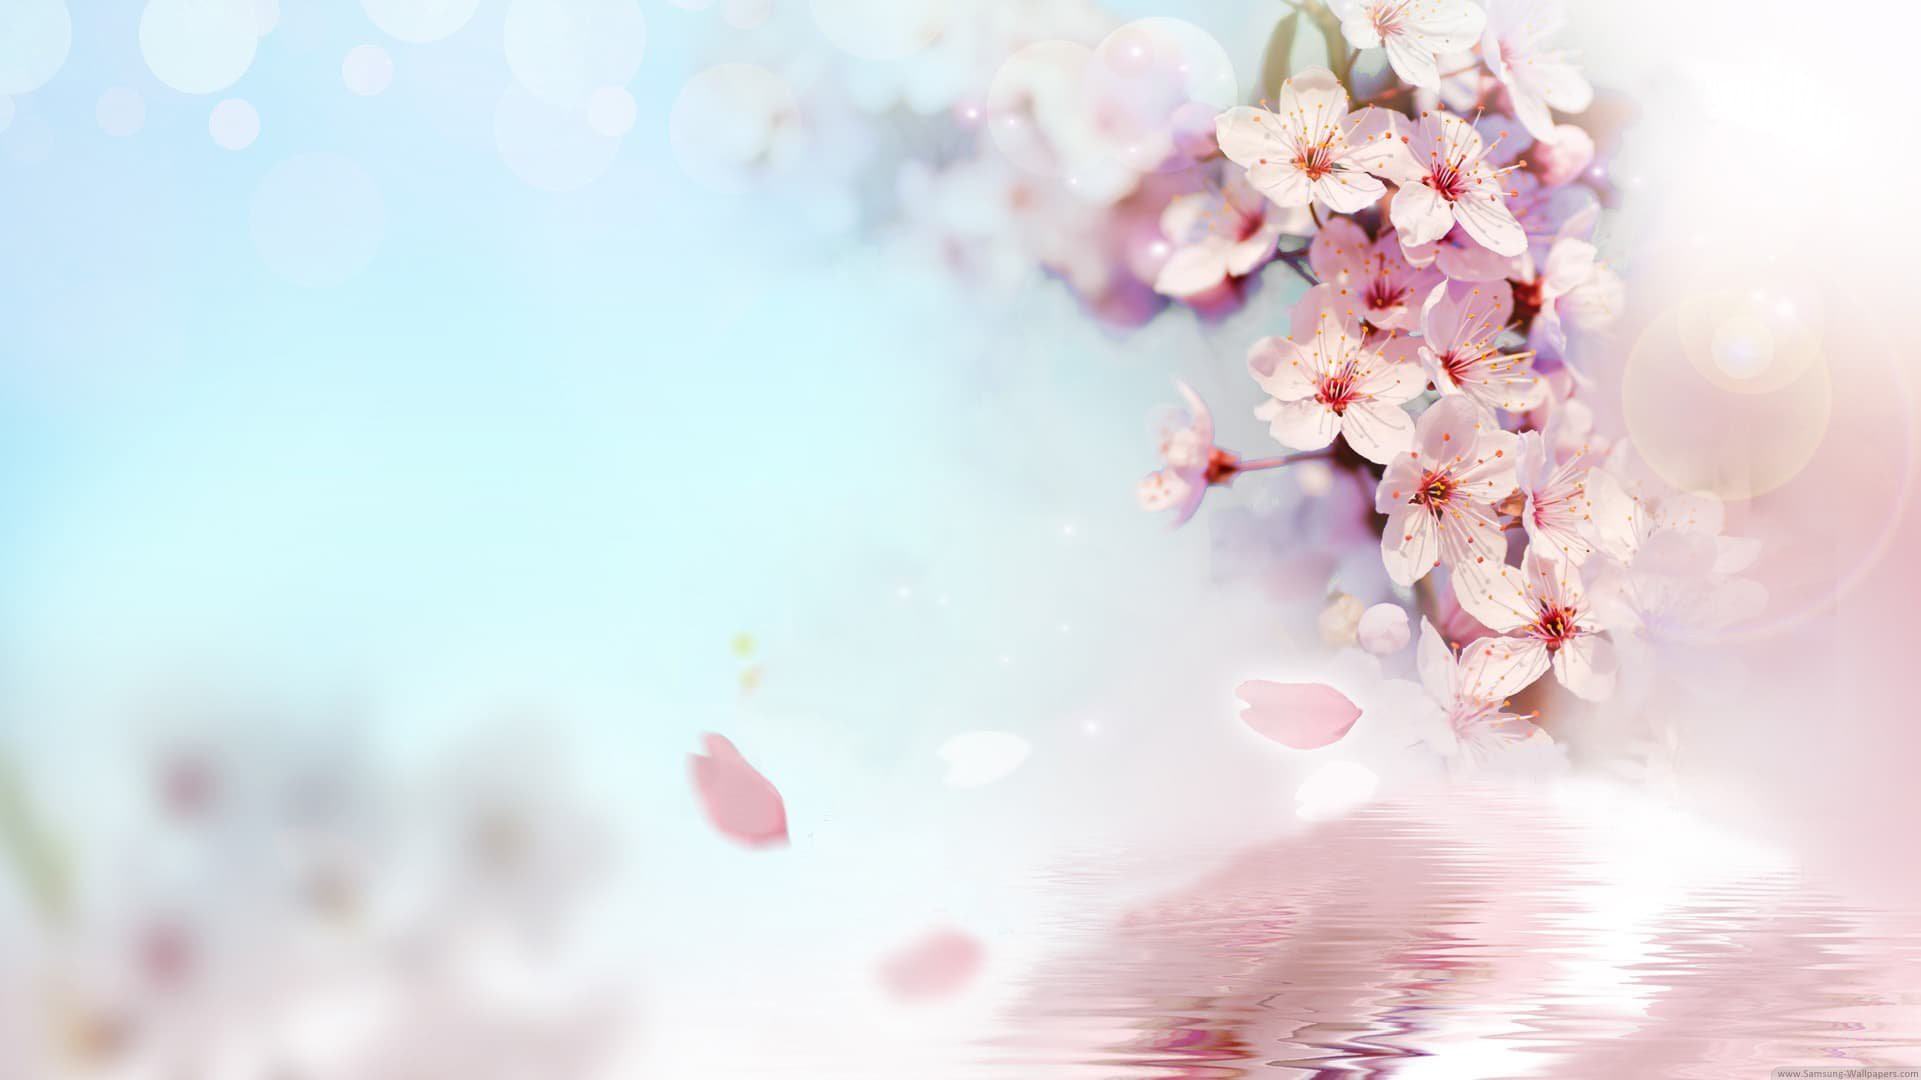 hình ảnh  Hồng thiên nhiên Hoa anh đào Mùa xuân chi nhánh Cánh hoa  Bầu trời Cây gậy Hình nền máy tính thực vật 4500x4500  Dorothe   1453983  hình ảnh đẹp  PxHere